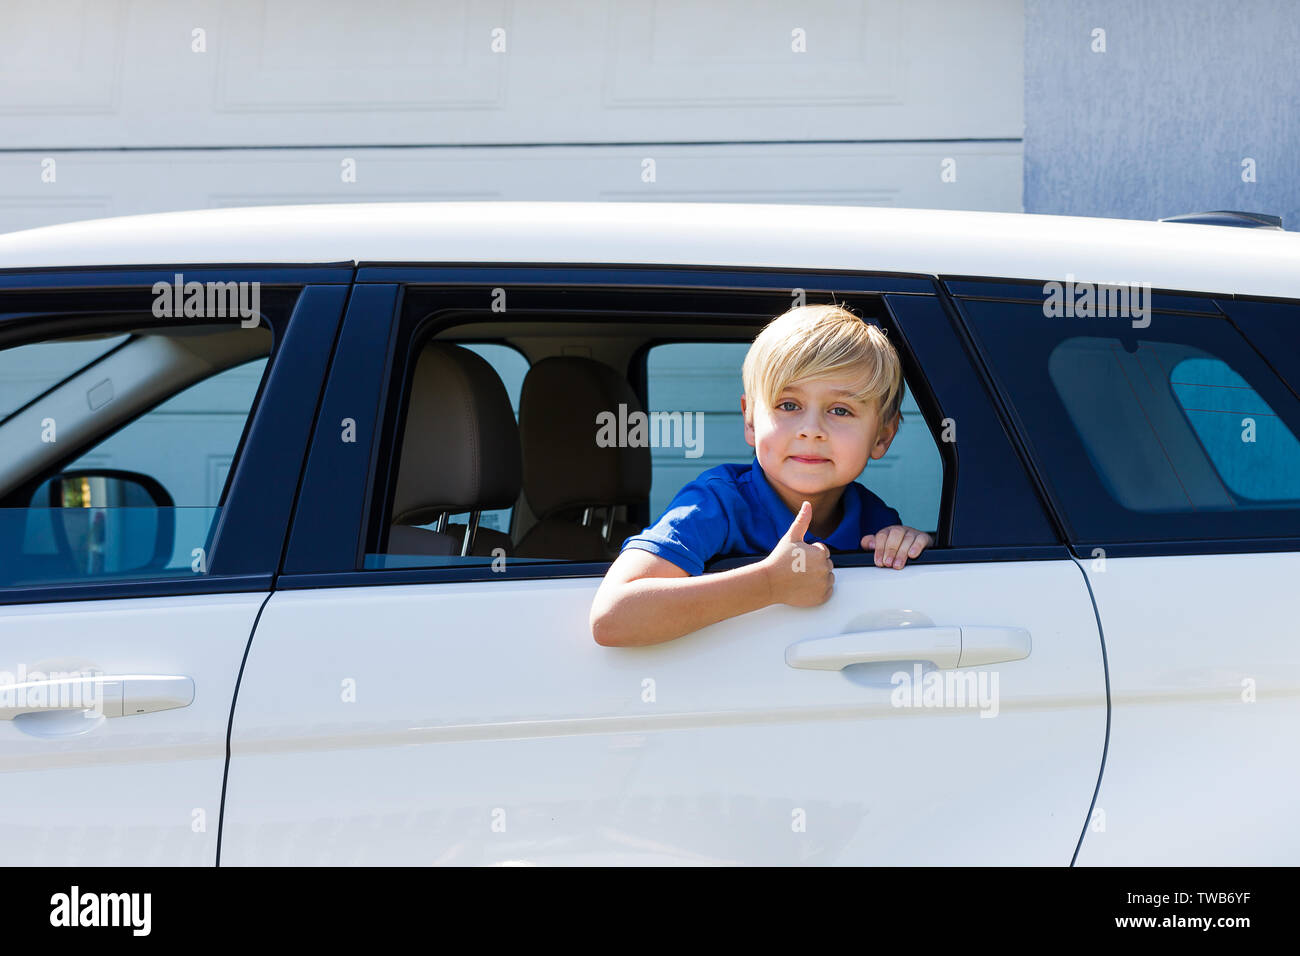 Даешь мальчику в машине. Машины для мальчиков. Машины мальчишки. Дети в окне машины. Машина мальчик стиль.